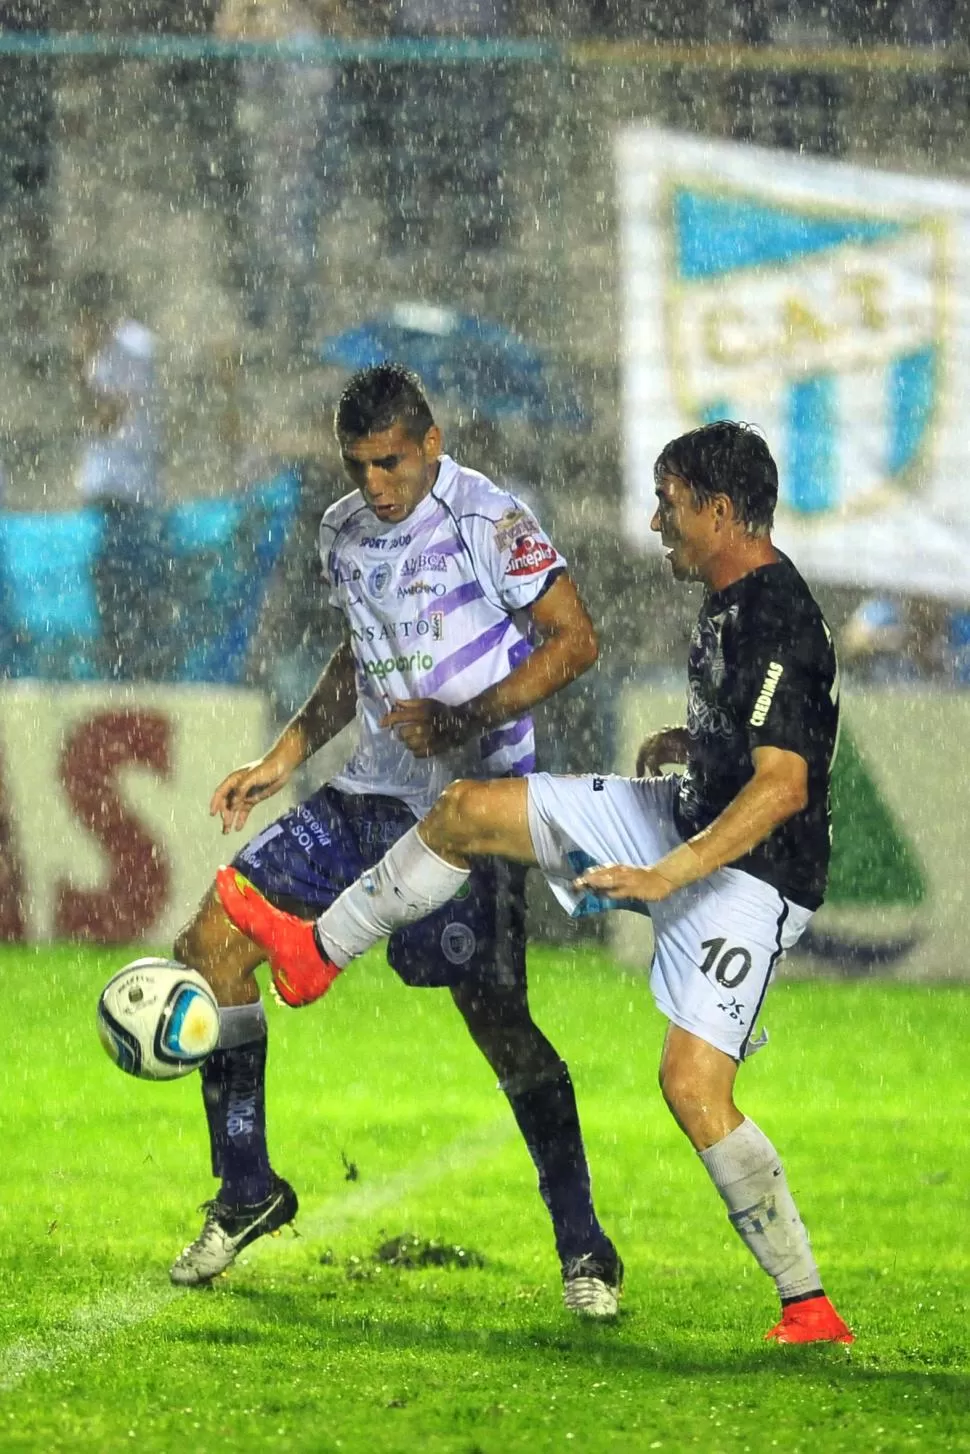 HIZO LO QUE PUDO. Leandro González intenta bajar la bocha ante la presión del rival y la intensa lluvia que complicó a todos. la gaceta / foto de diego aráoz